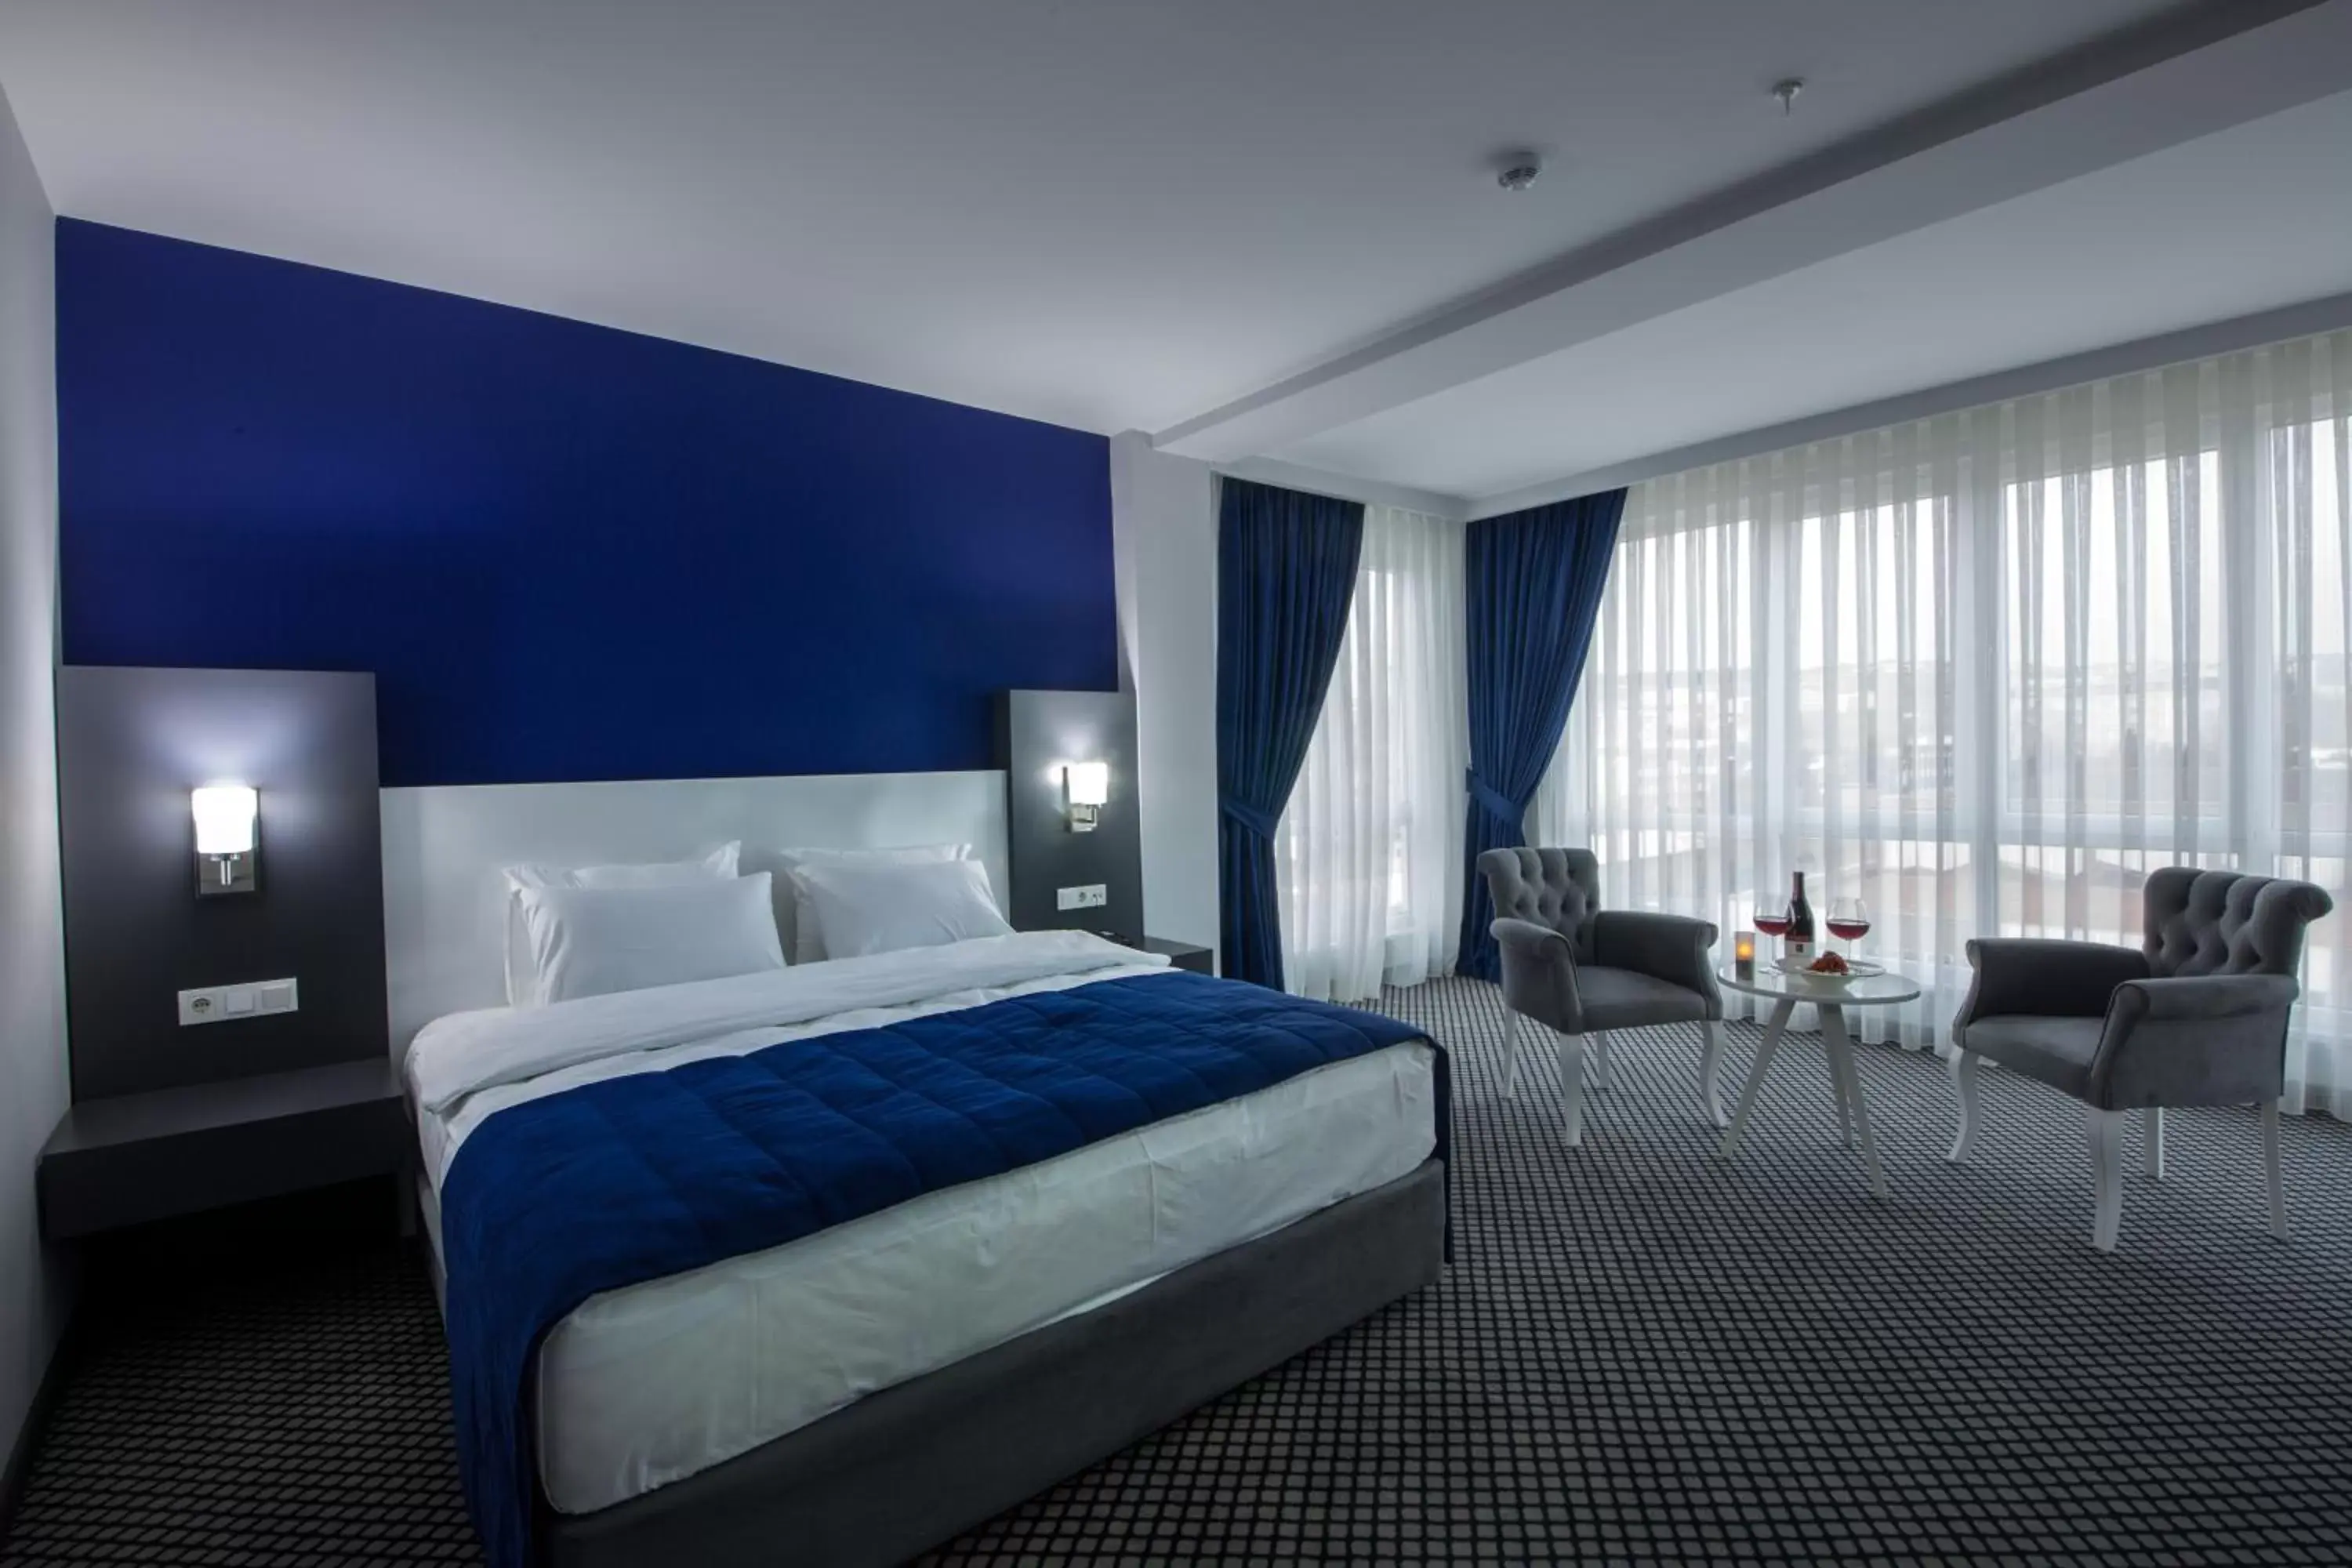 Shower, Bed in Cavit Duvan Prestige Hotel